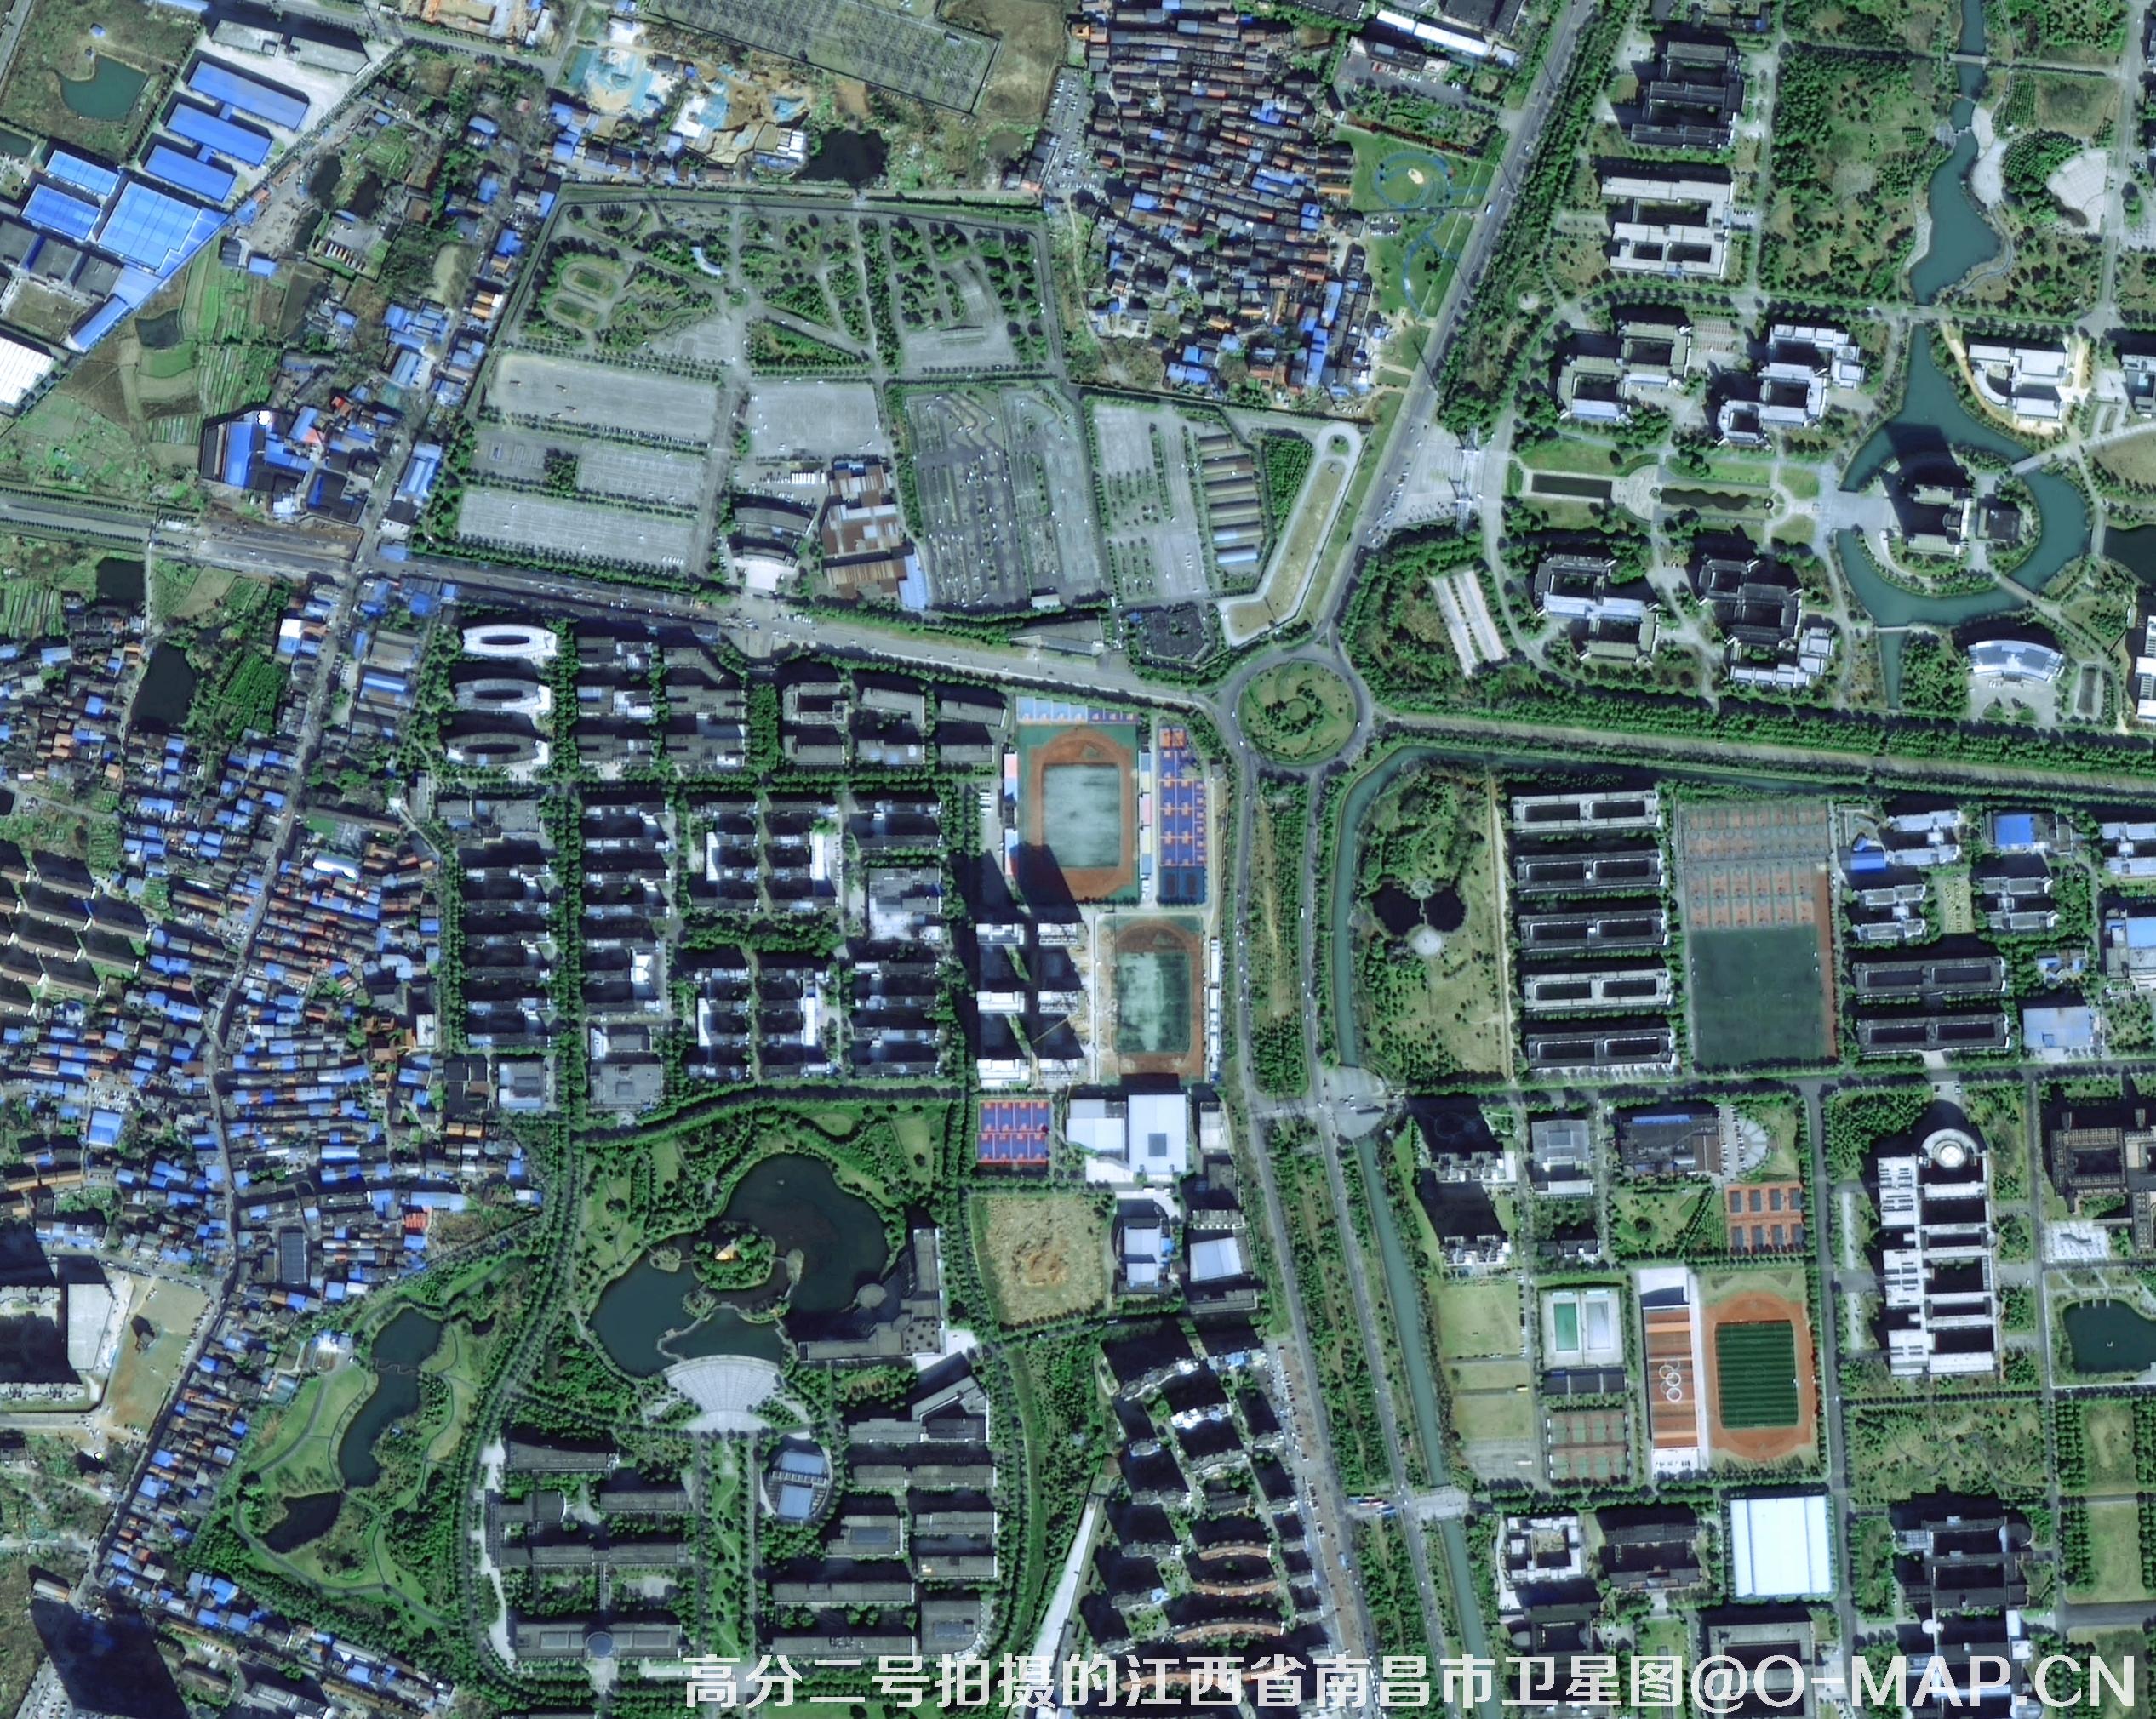 GF2卫星拍摄的1米分辨率卫星图样例